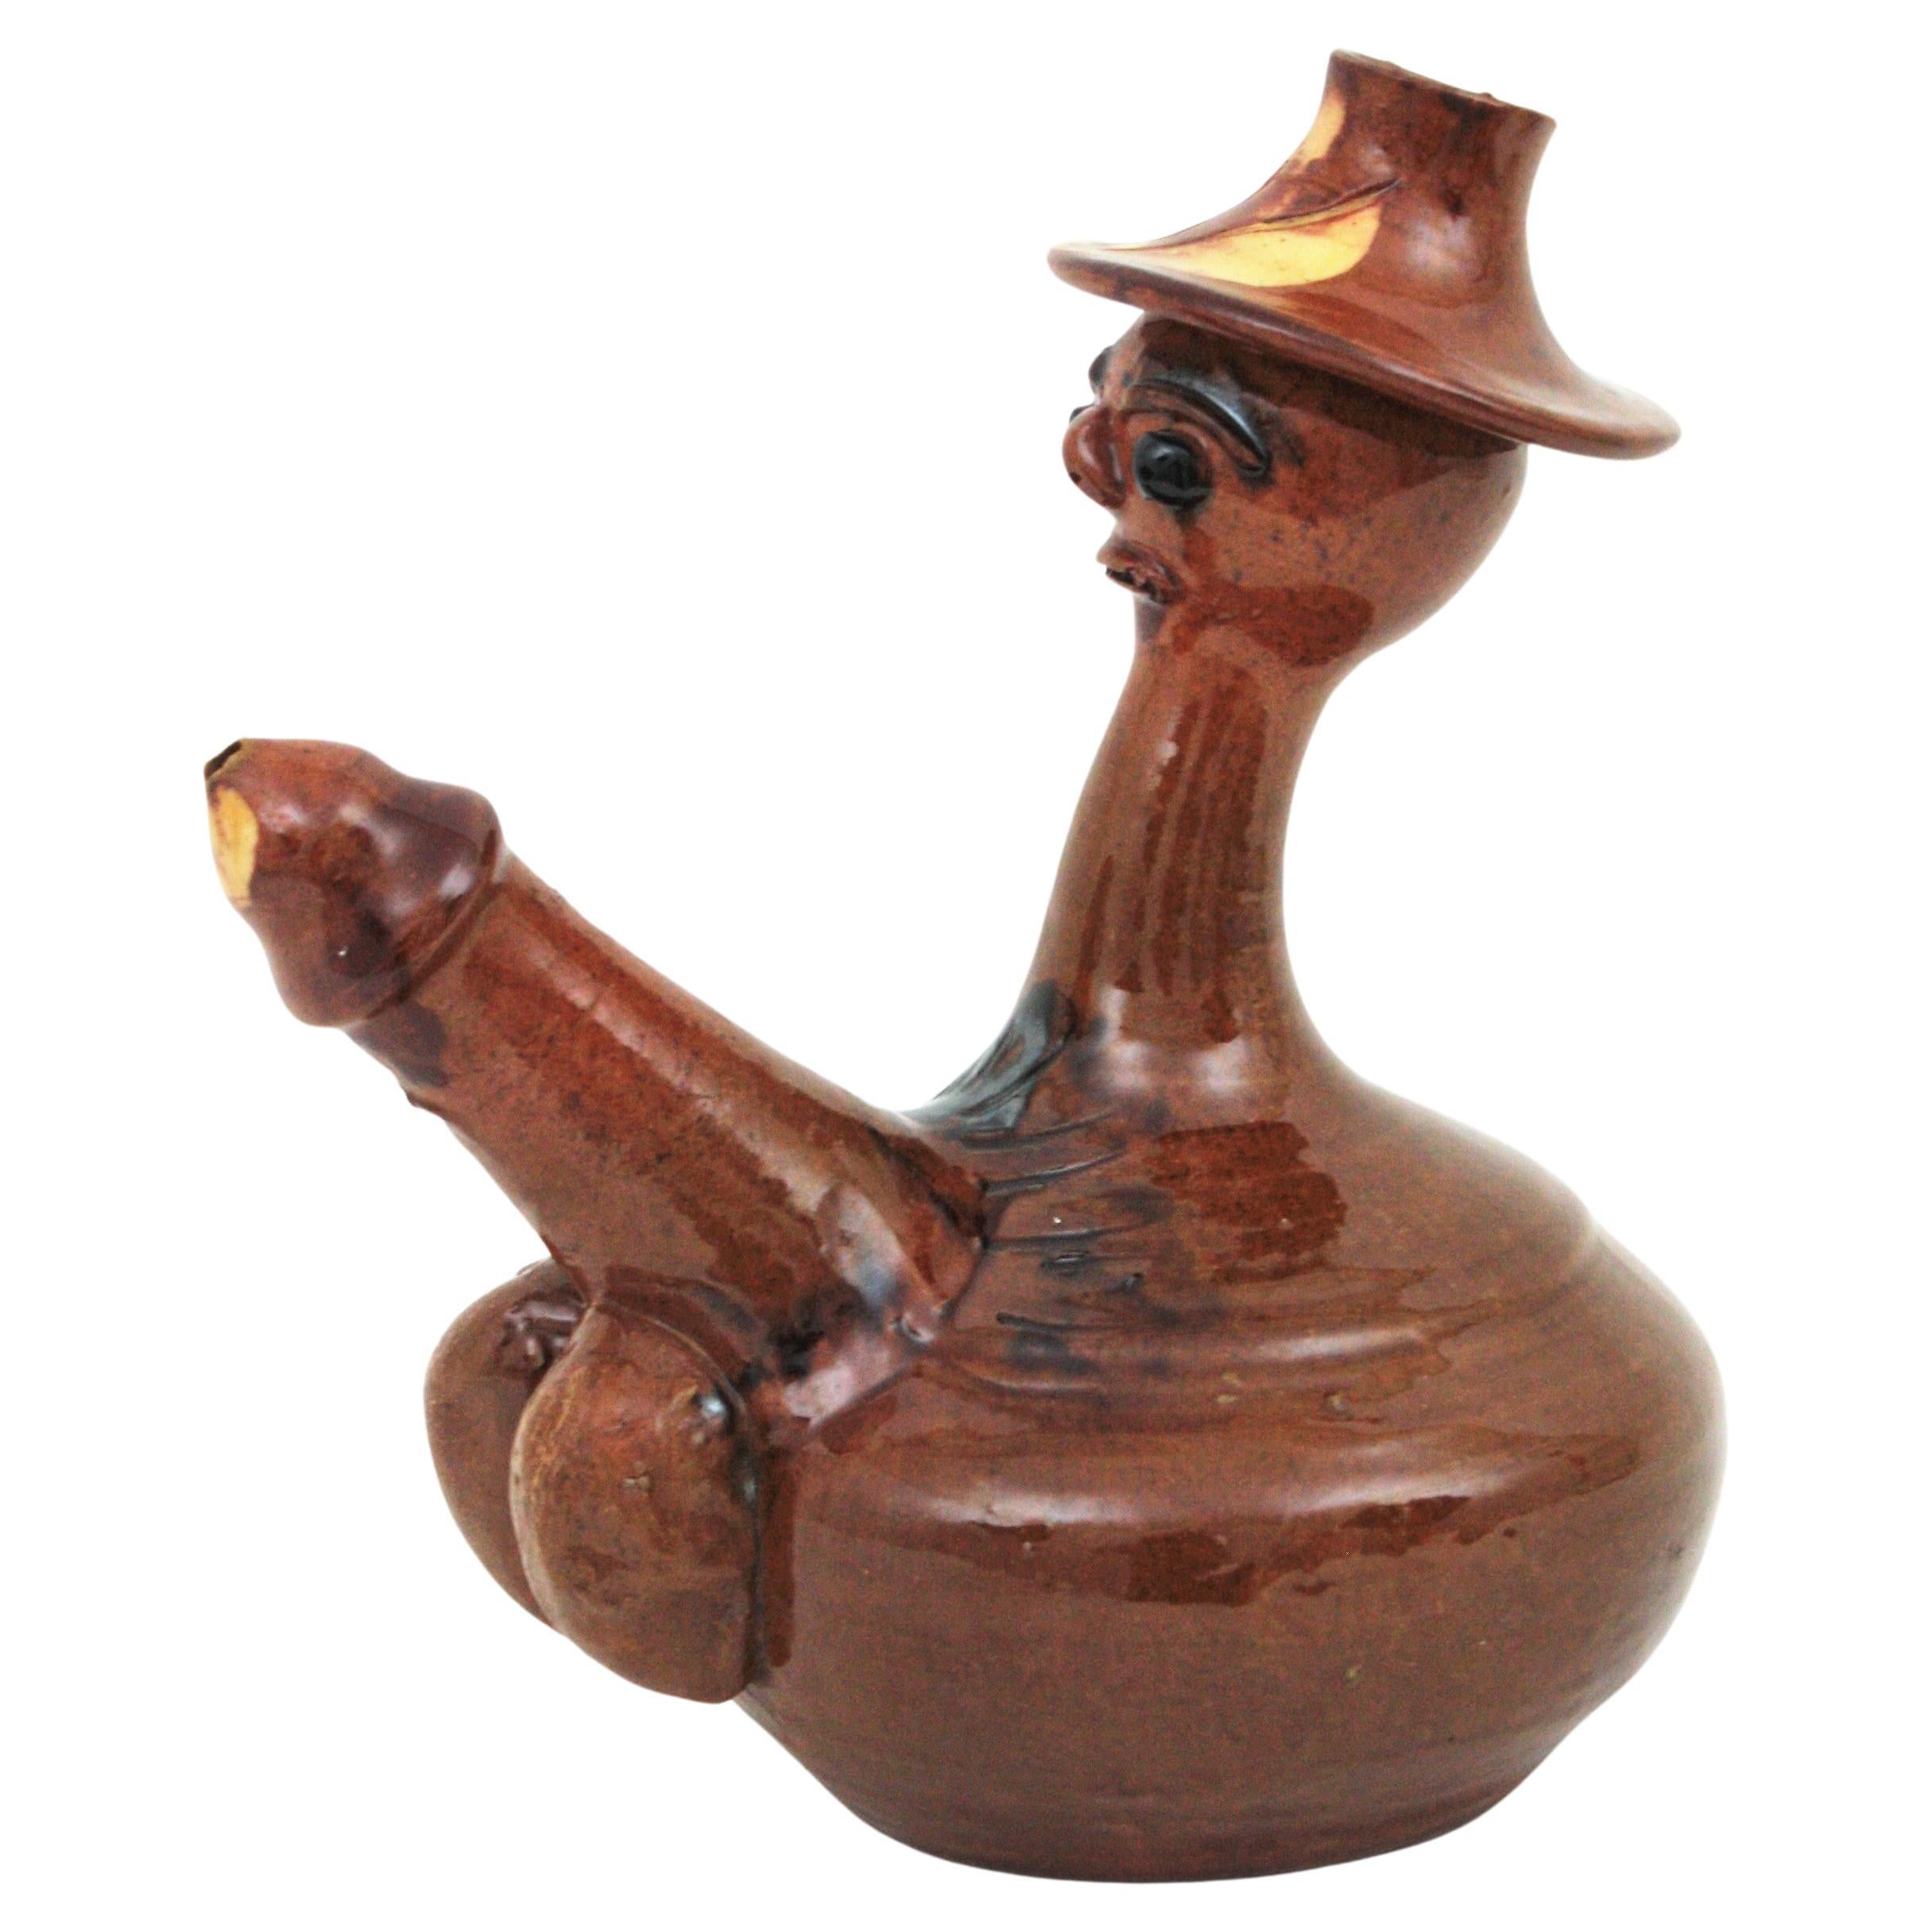 Pichet phallique en céramique de terre cuite émaillée fabriqué à la main, Espagne, années 1960.
A forme d'un homme avec un phallus exagéré.
Cette Calle traditionnelle espagnole, appelée 